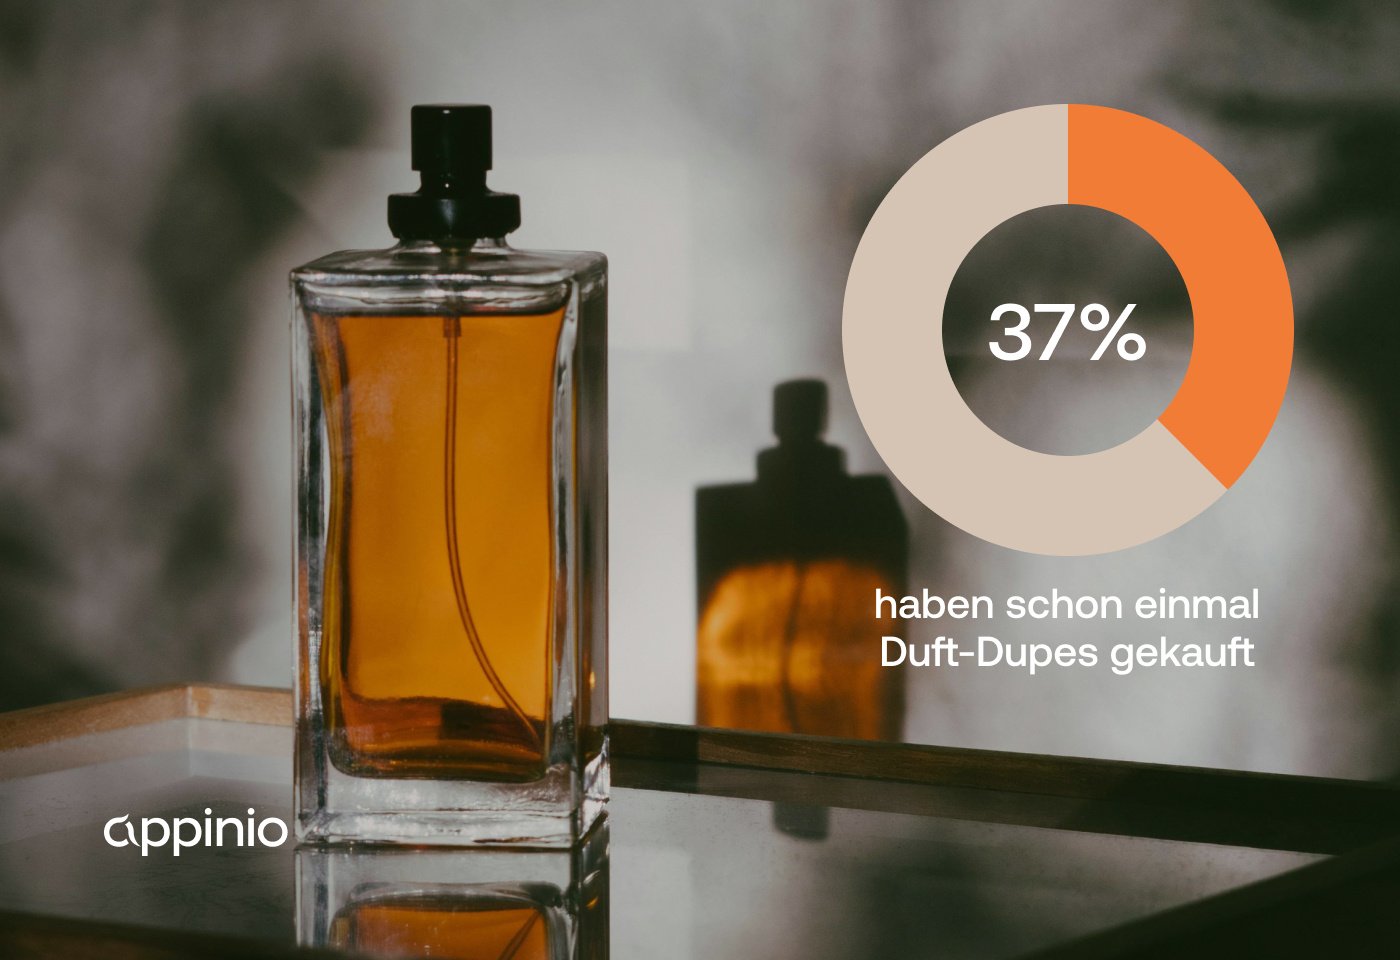 37 % der Befragten haben bereits Duftduplikate gekauft, hauptsächlich um Geld zu sparen. 64 % sind mit Duftduplikaten zufrieden oder sehr zufrieden, und 51 % bewerten ihre Qualität im Vergleich zum Original als (sehr) gut.